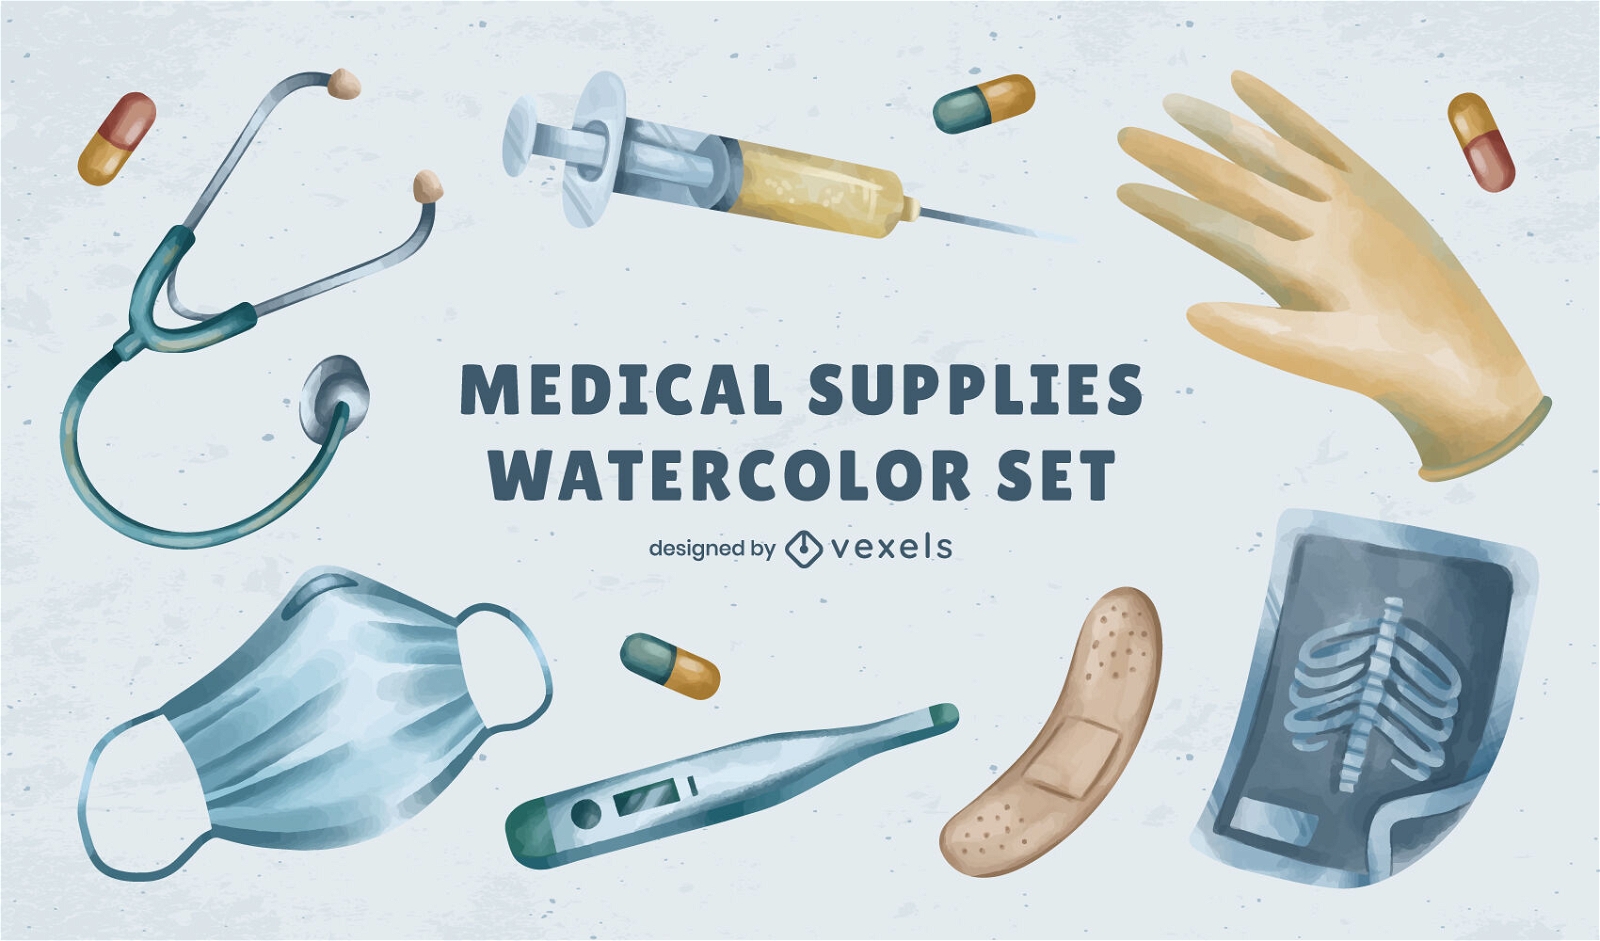 Medical supplies watercolor elements set